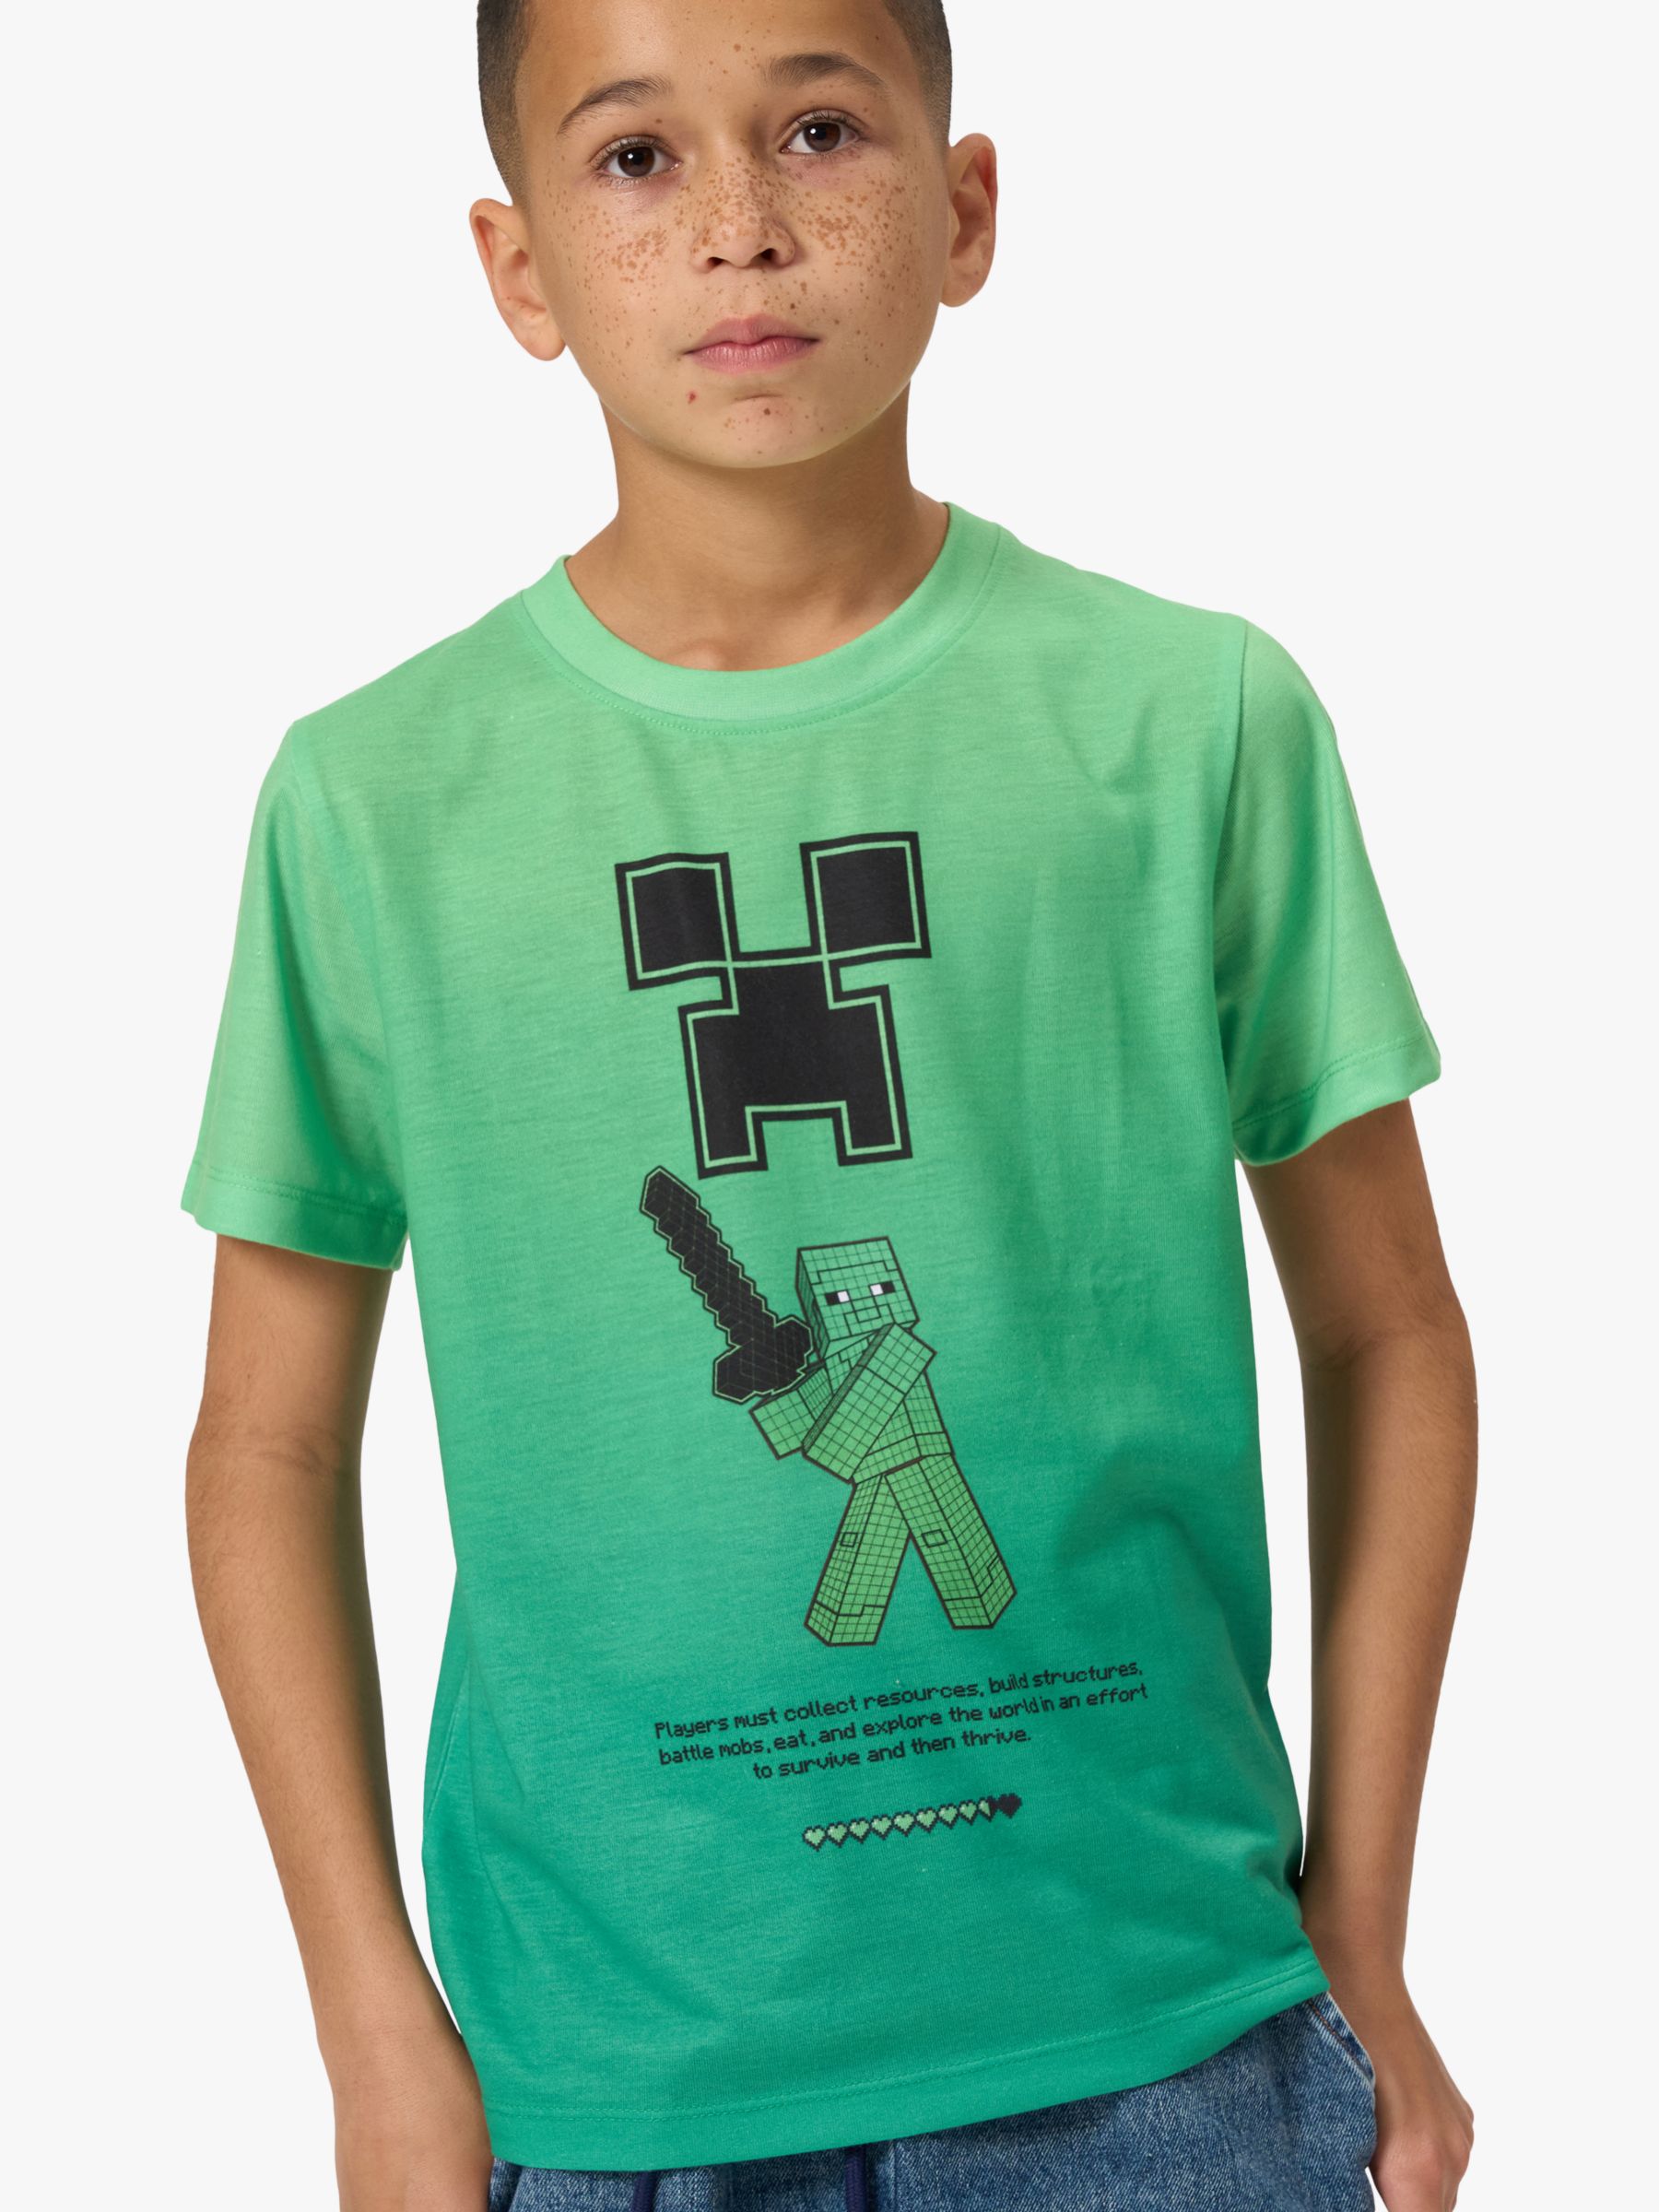 Детская футболка с рисунком Minecraft Angel & Rocket, зеленый футболка minecraft – creeper серая